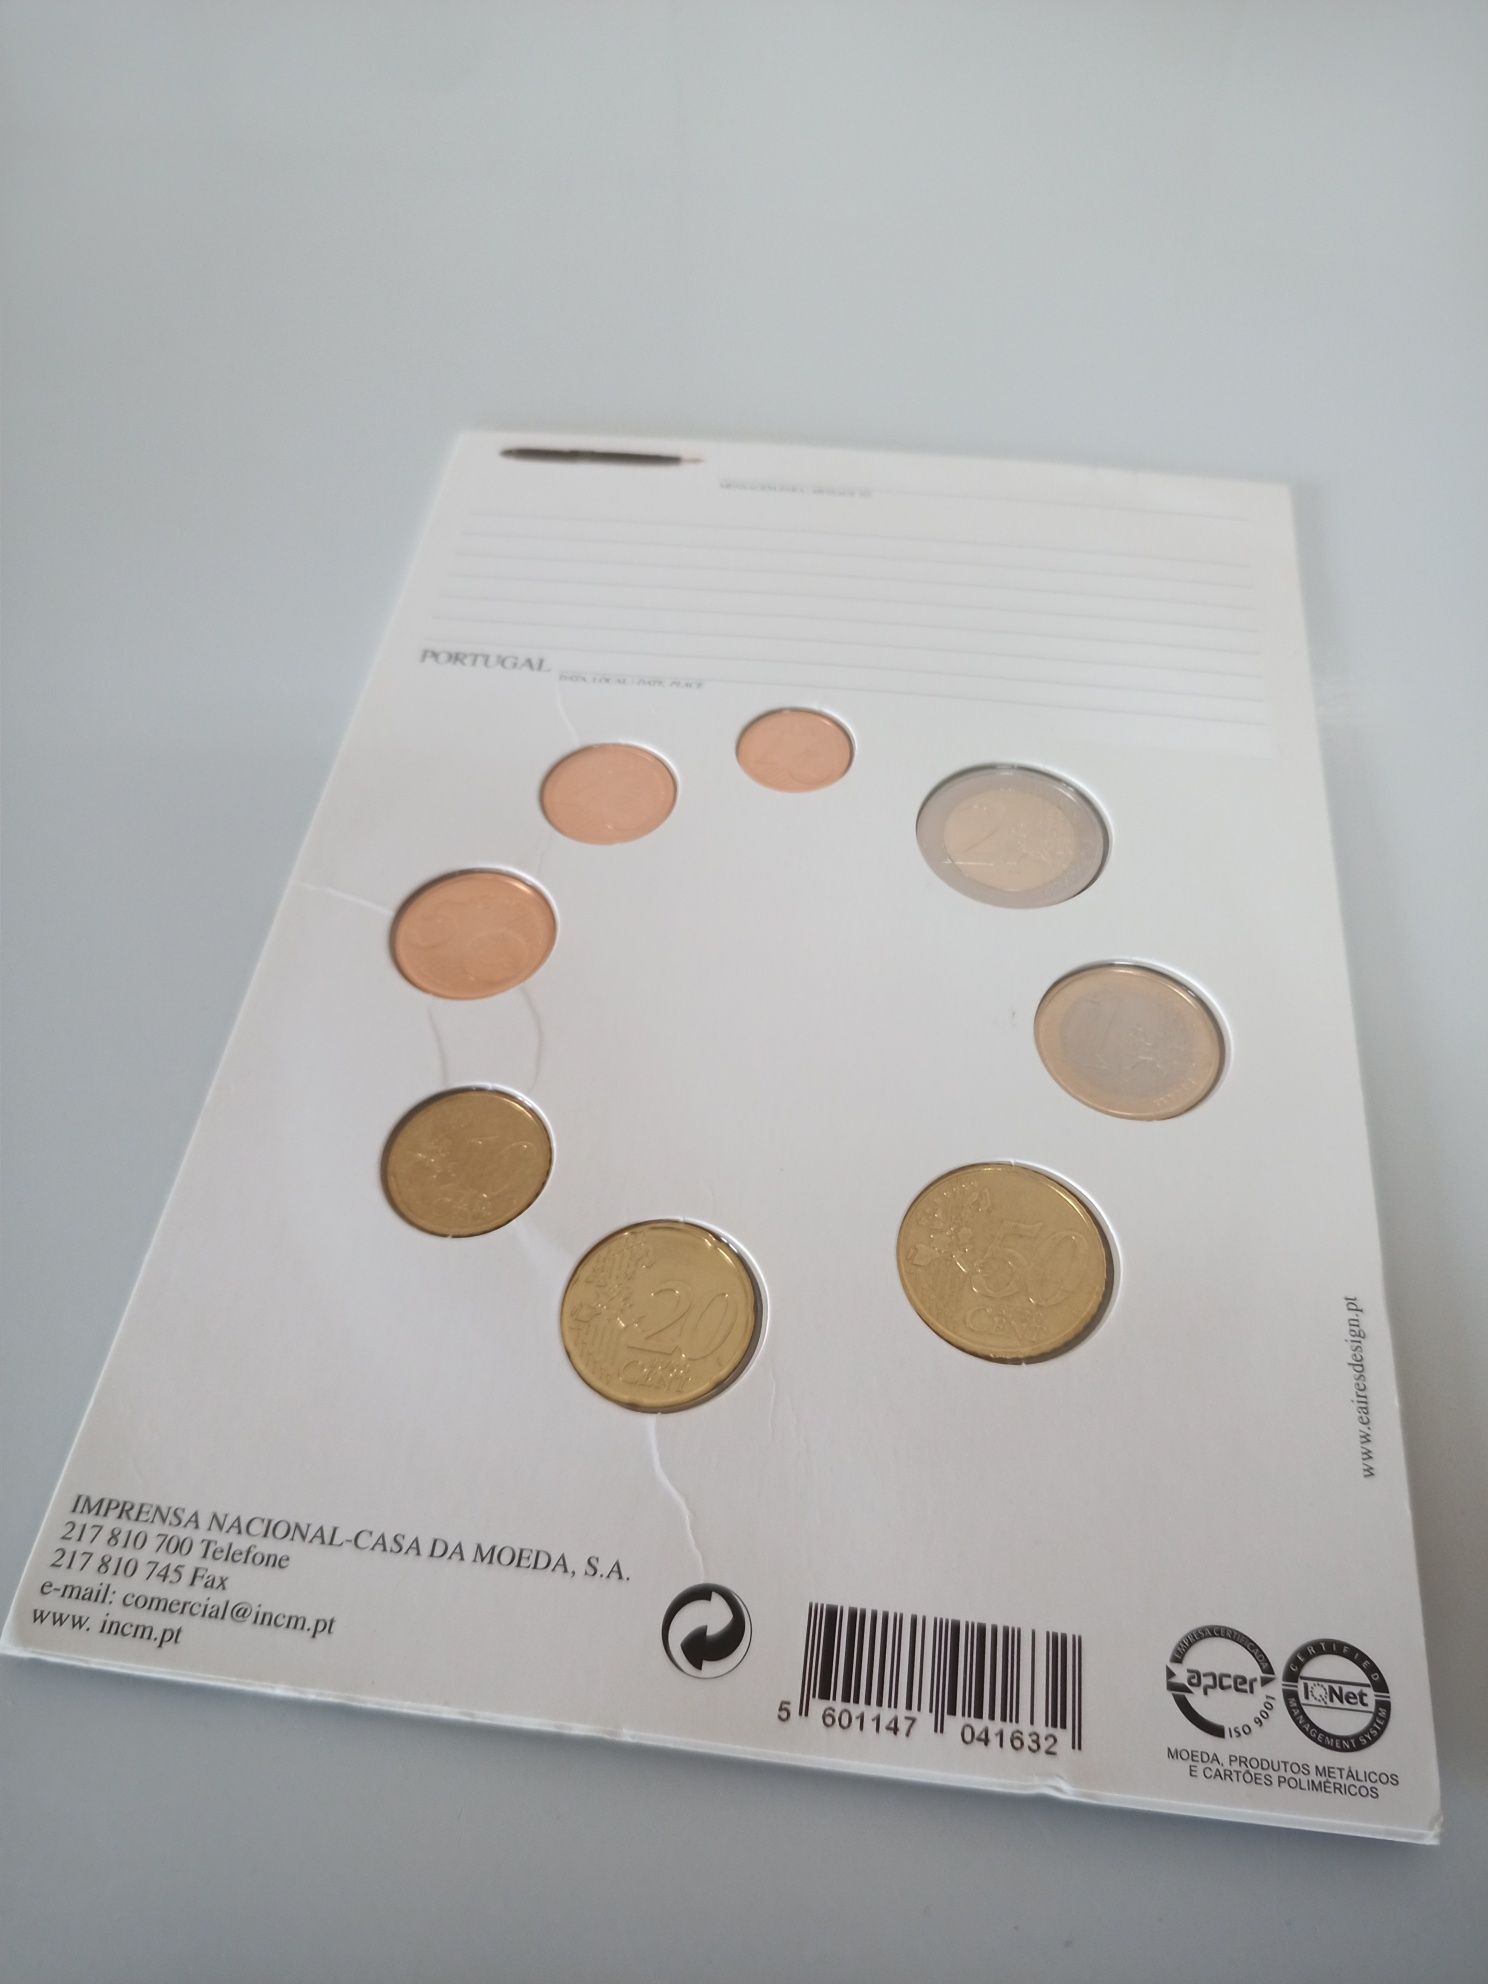 Carteira moedas euros Portugal Fdc 2007, 08, 09, 10, 11, 12, 12, 2015